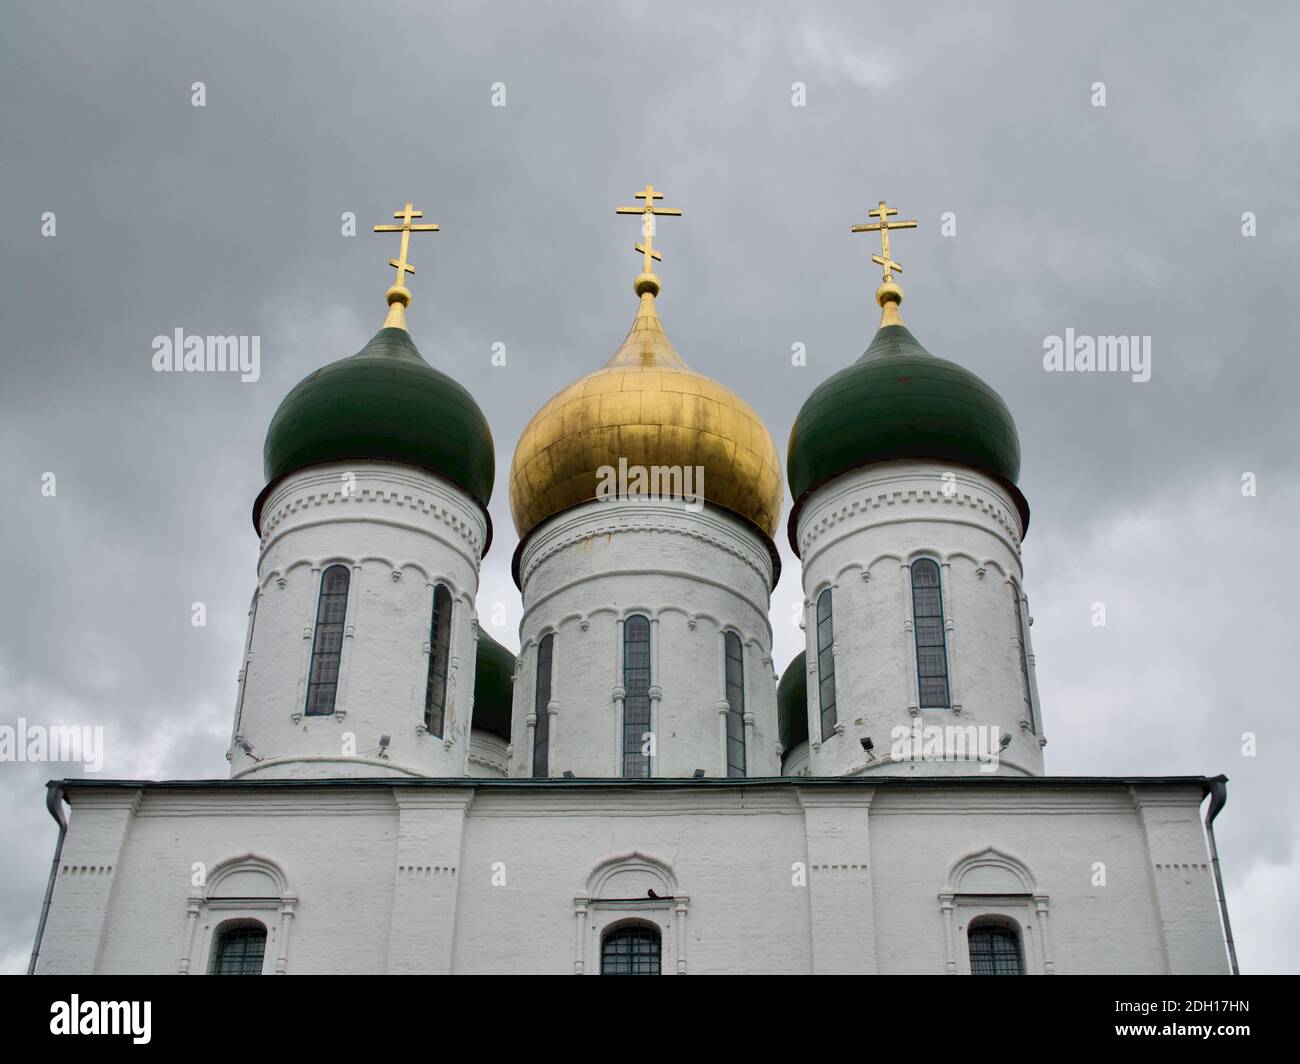 Éléments de l'architecture ancienne du Kremlin de Kolomna, Russie Banque D'Images